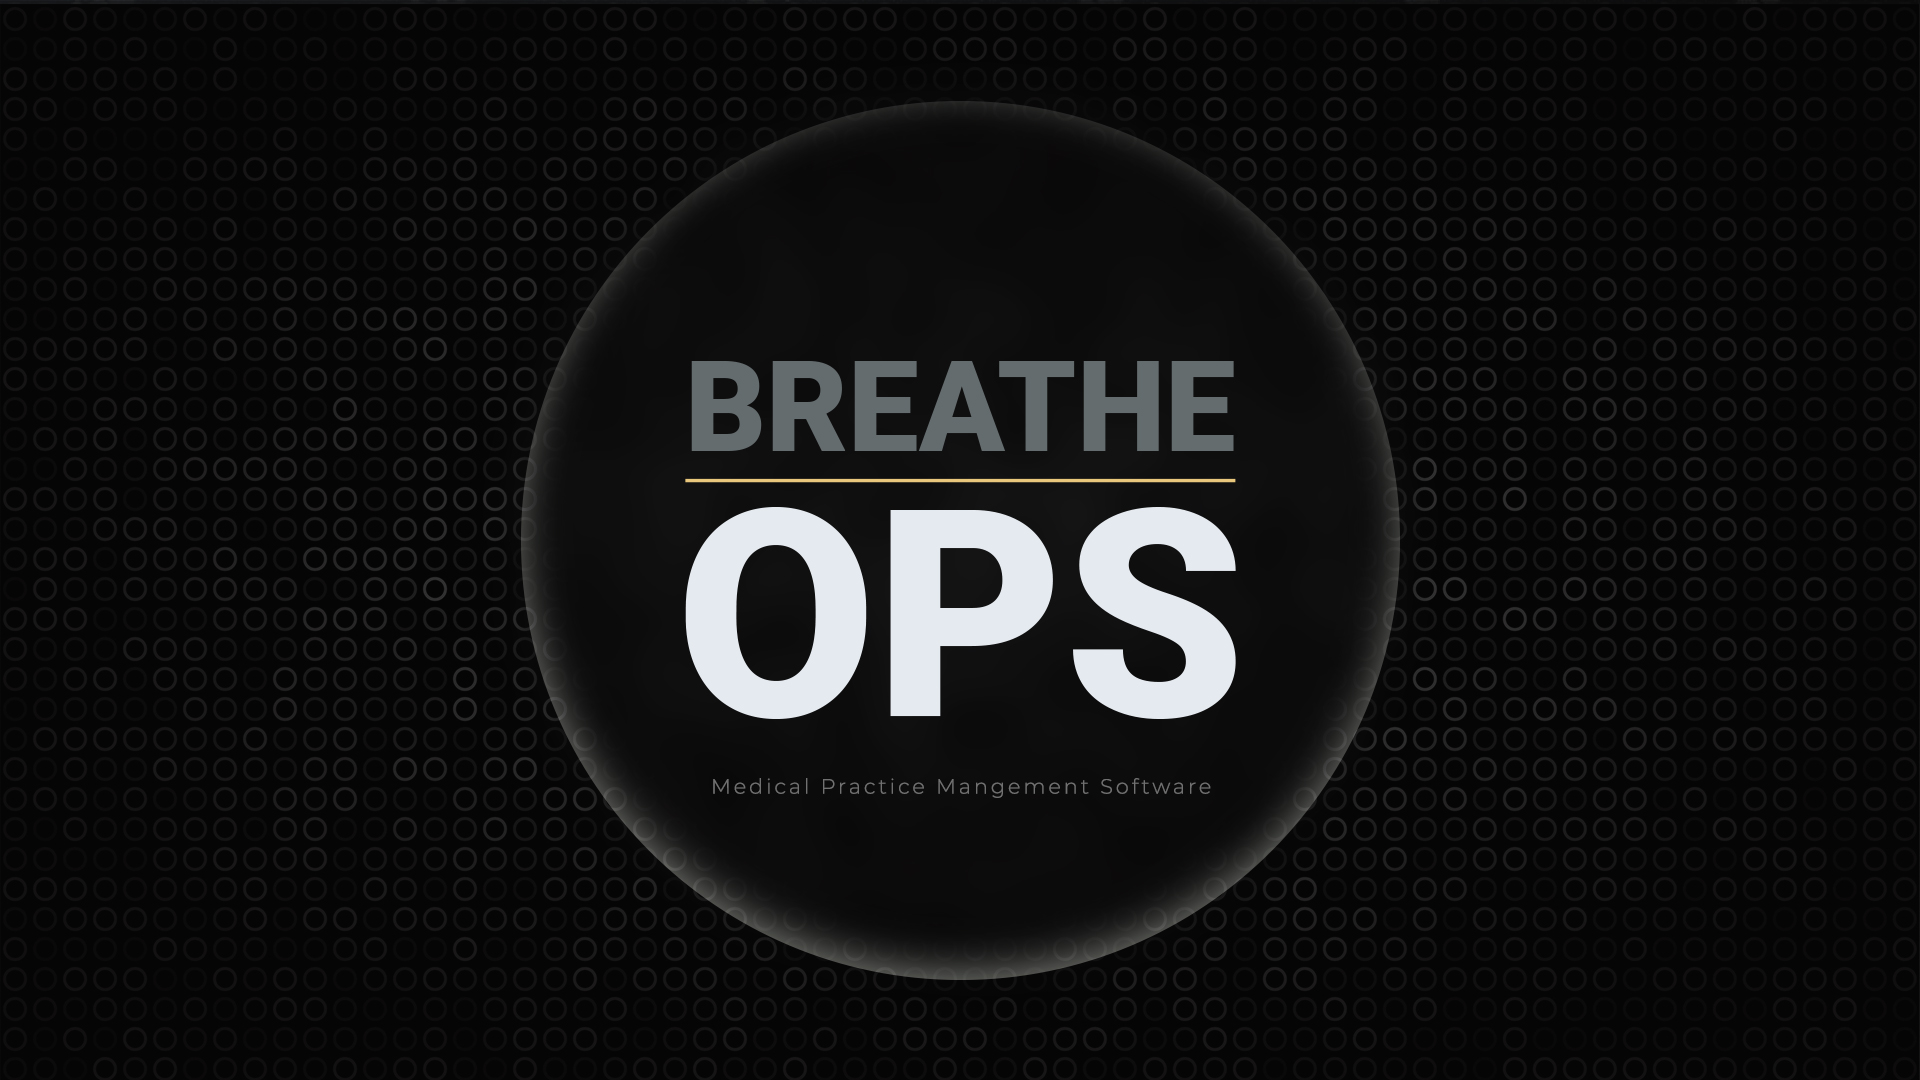 Breathe Ops Medical Practice Management Software 